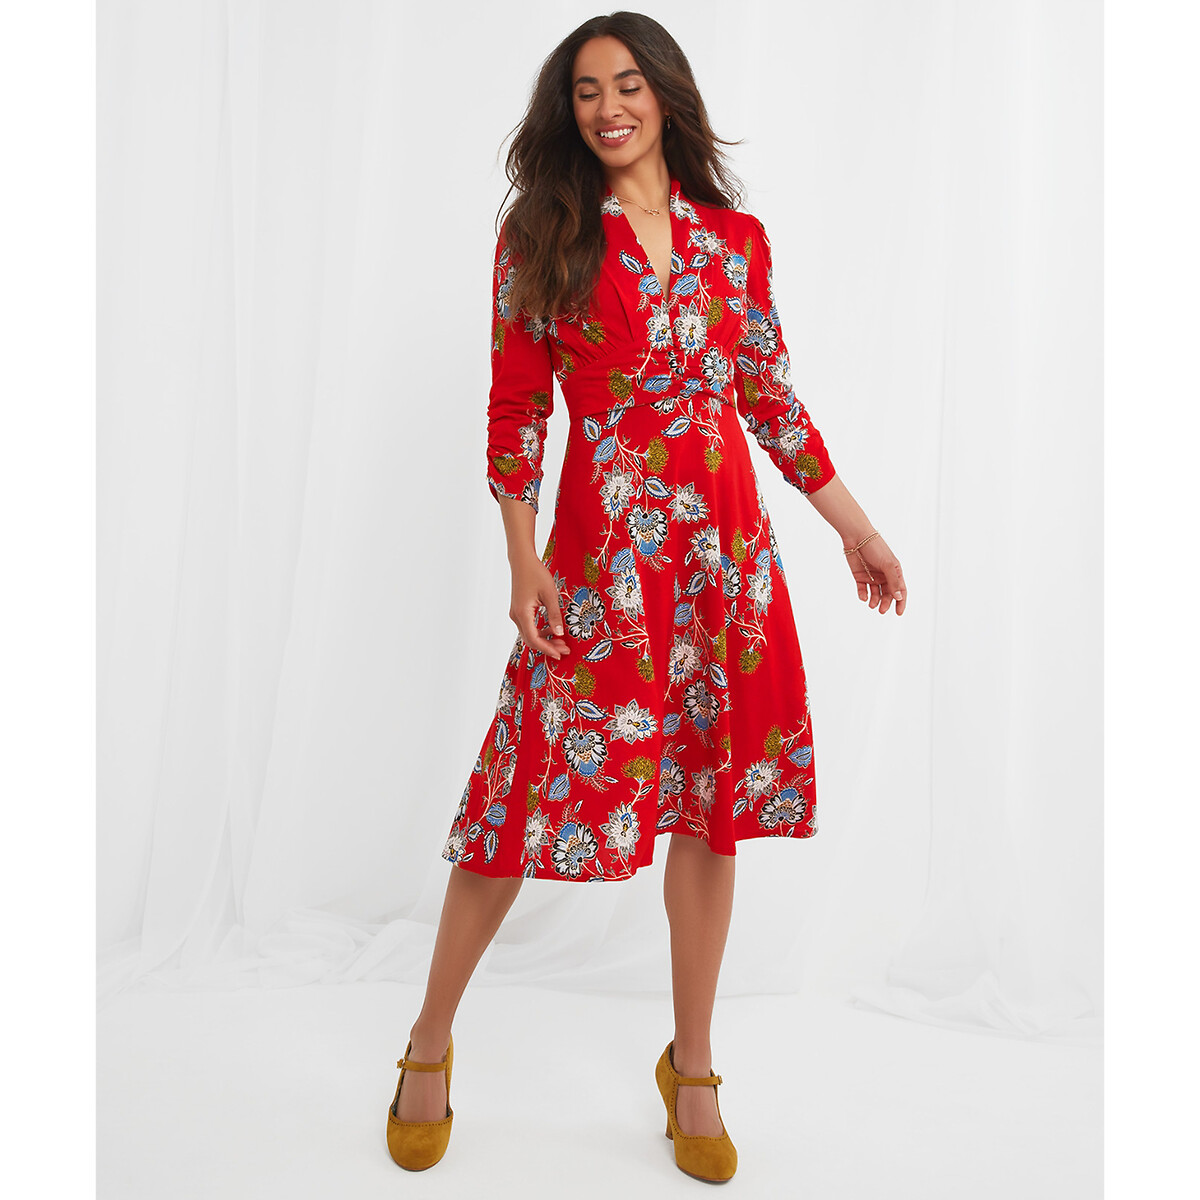 Платье JOE BROWNS Платье С V-образным вырезом цветочный принт 50 красный, размер 50 - фото 2